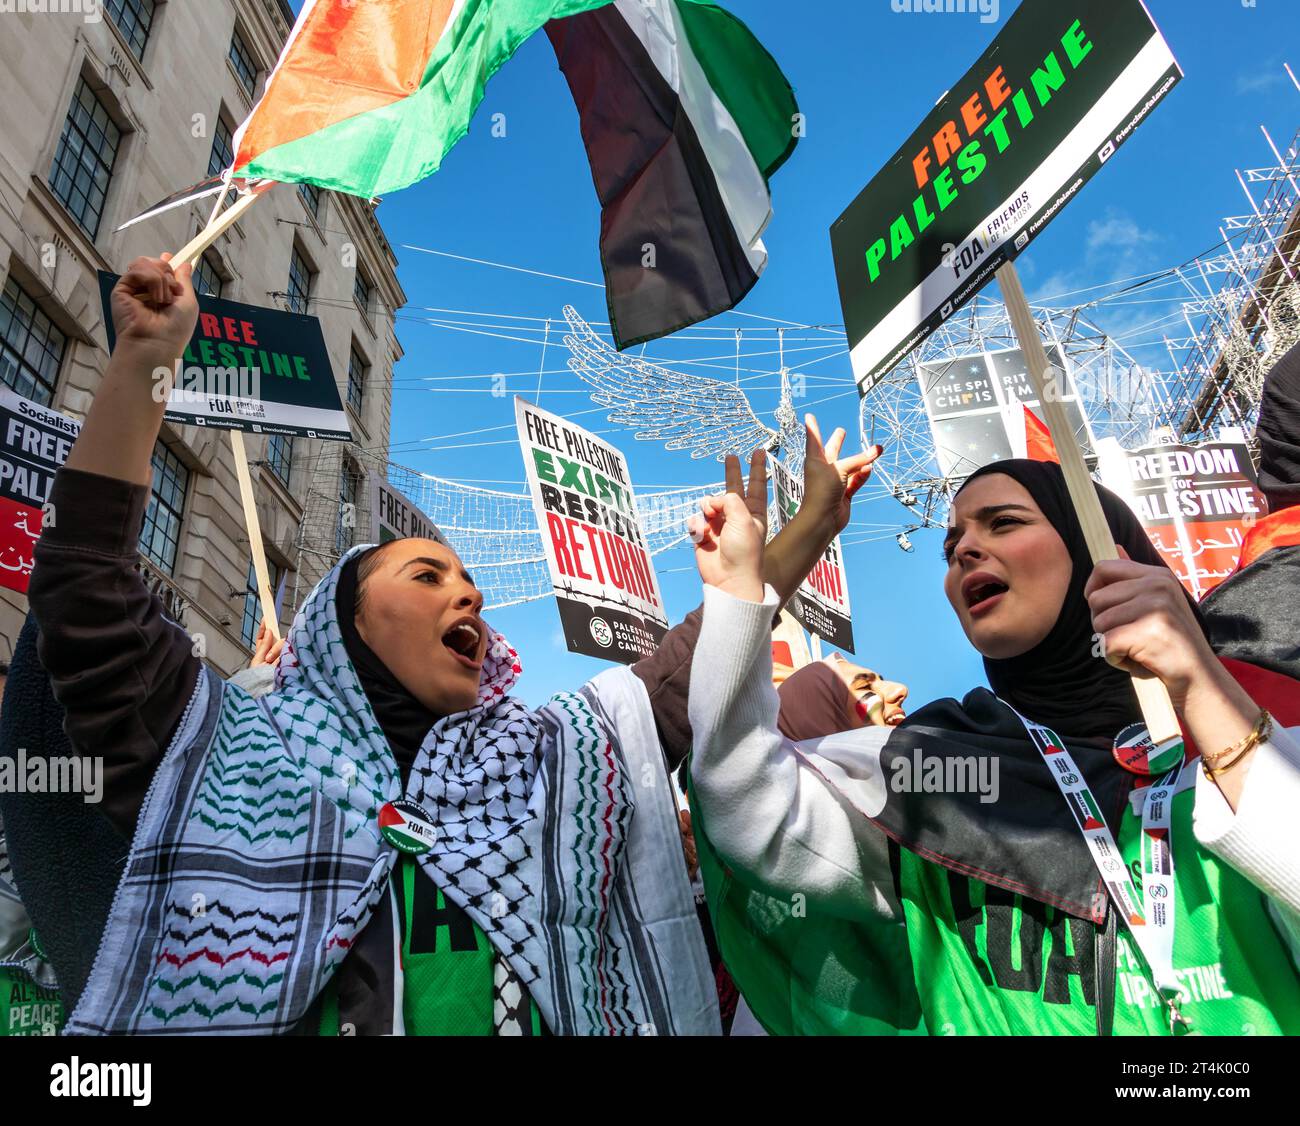 Mehrere Tausend Menschen marschierten vom BBC-Sendehaus zur Downing Street, um ein freies Palästina zu fordern und die israelische Belagerung von Gaza zu beenden. Stockfoto